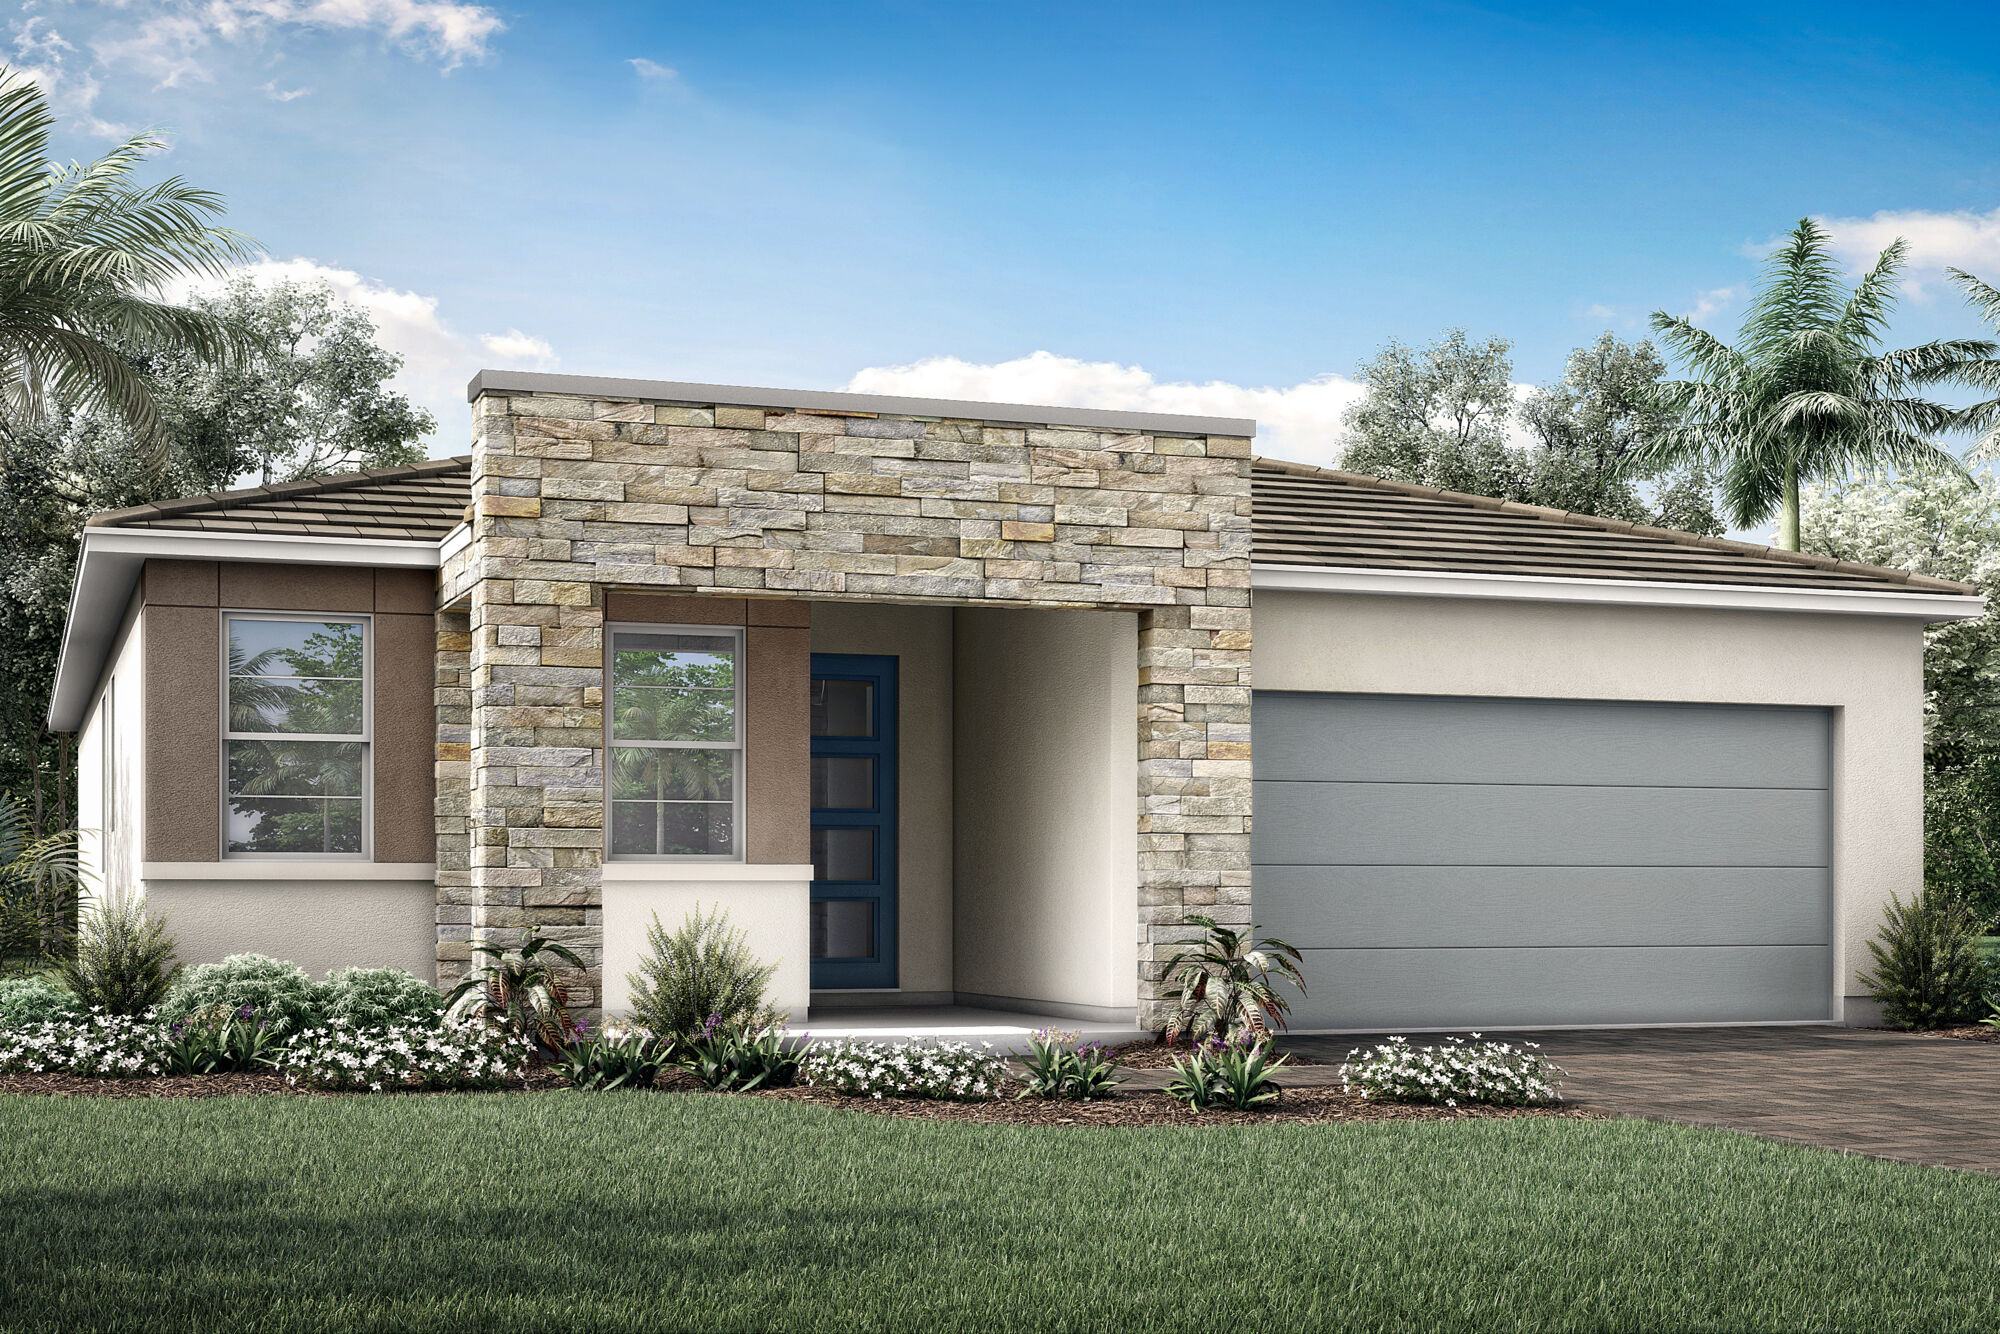  Elevation Front with garage, window, door, exterior brick and exterior stone